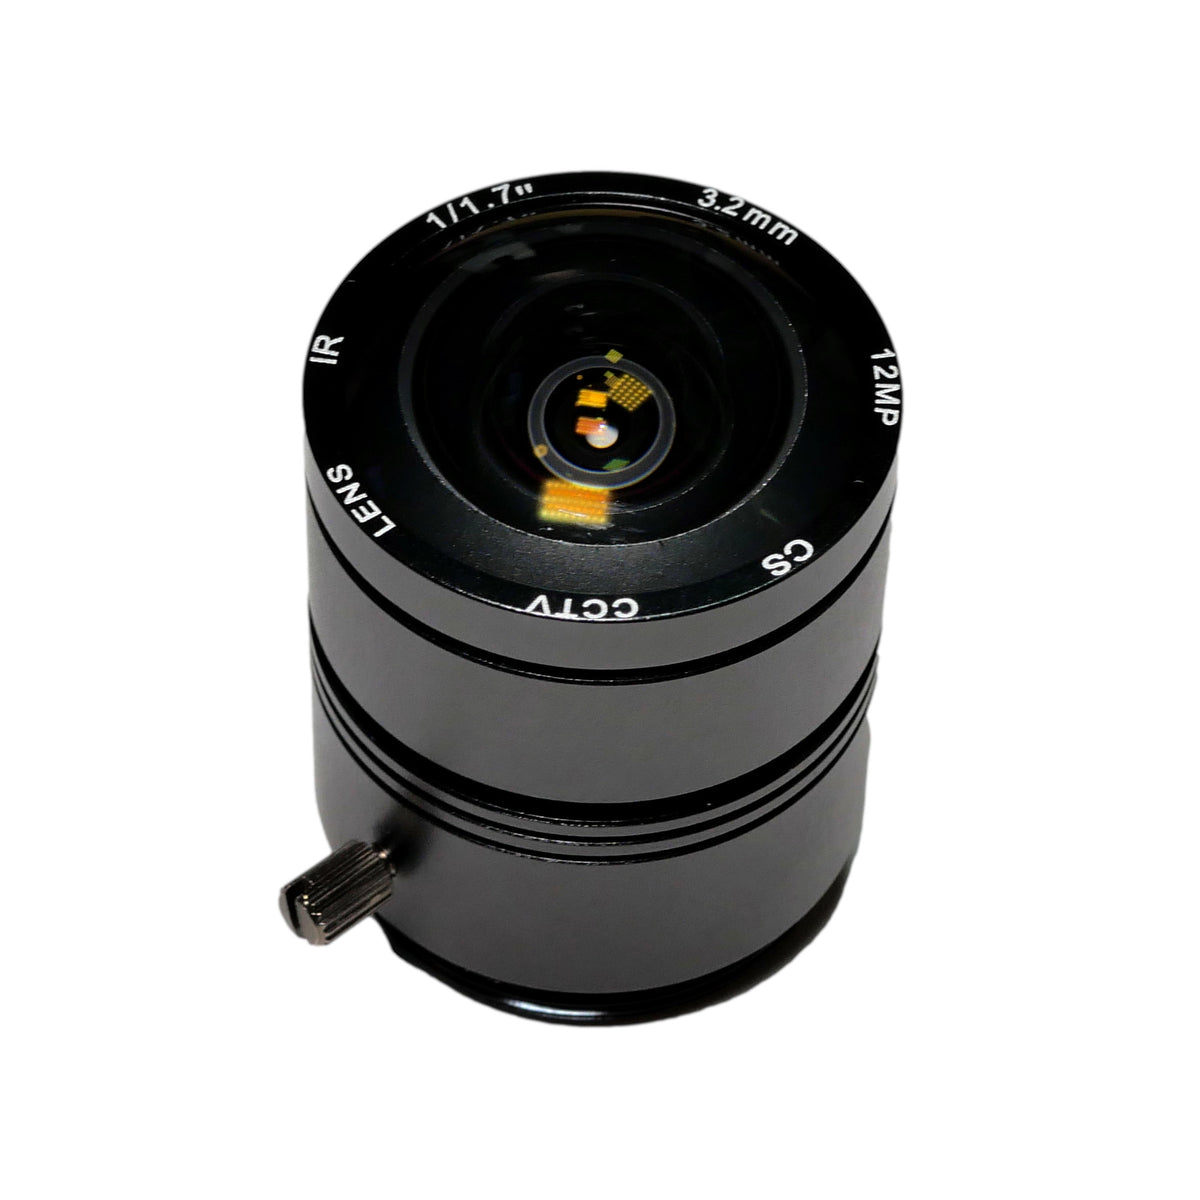 Raspberry Pi HQカメラ用3.2mm超広角レンズ「RPL-UltraWide-3.2mm 